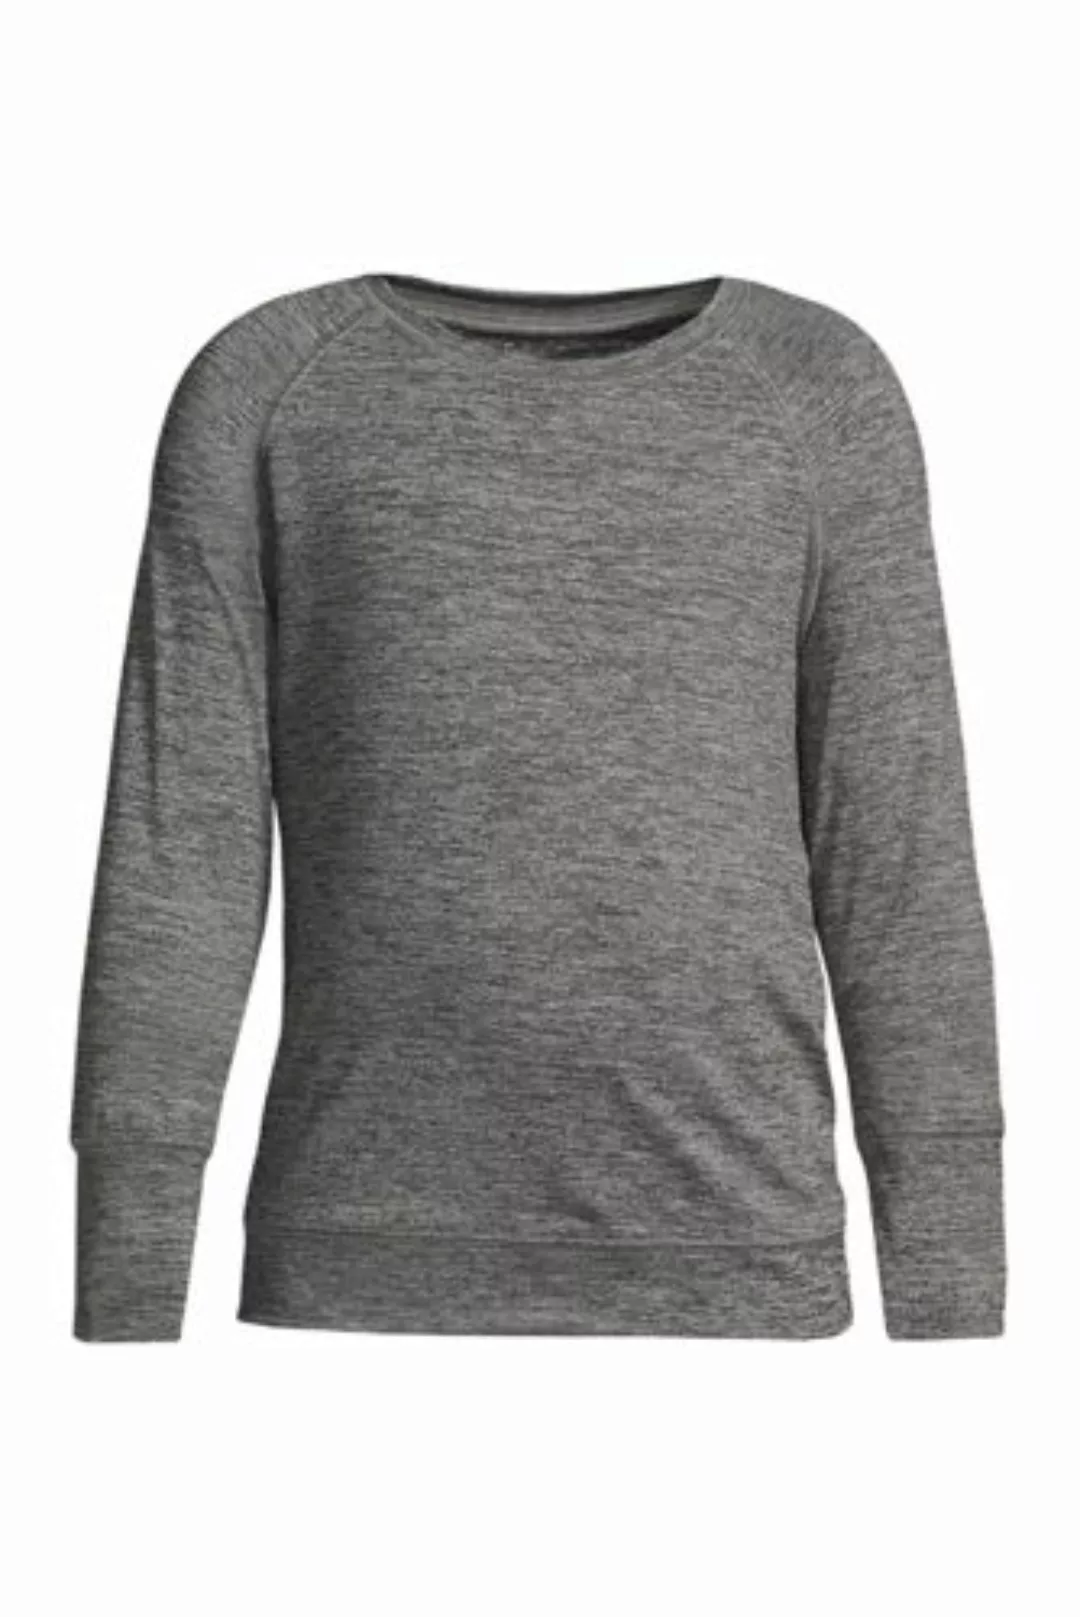 Active-Langarm-Shirt, Größe: 122/128, Schwarz, Elasthan, by Lands' End, Sch günstig online kaufen